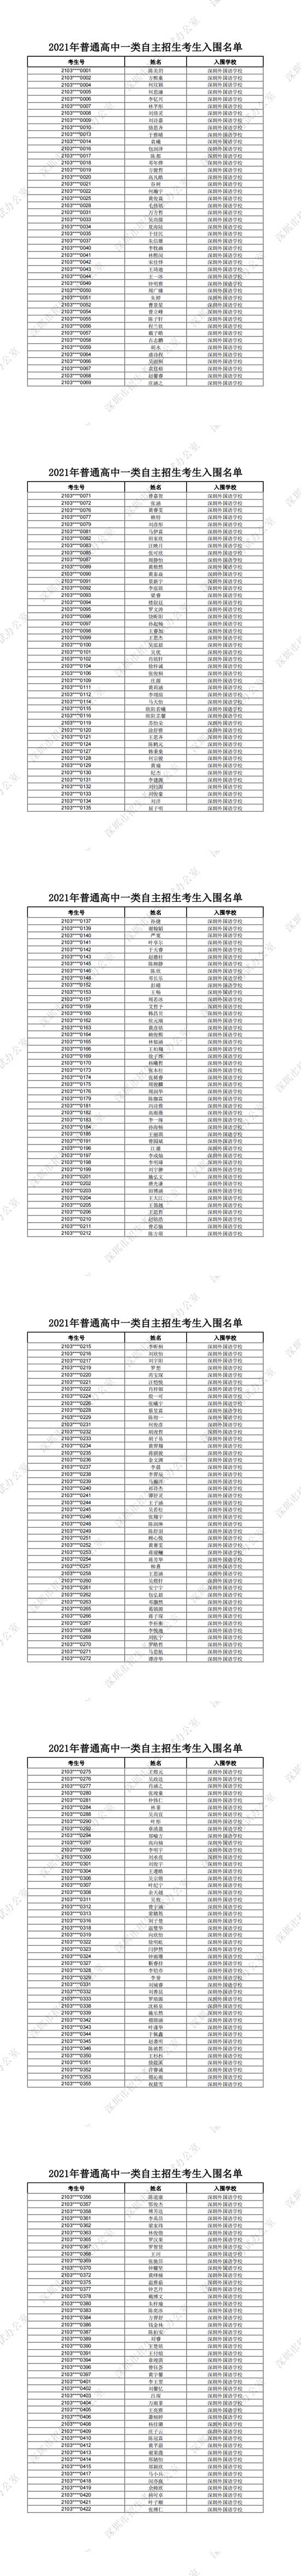 深圳外国语学校2021普通高中一类自主招生考生入围名单一览